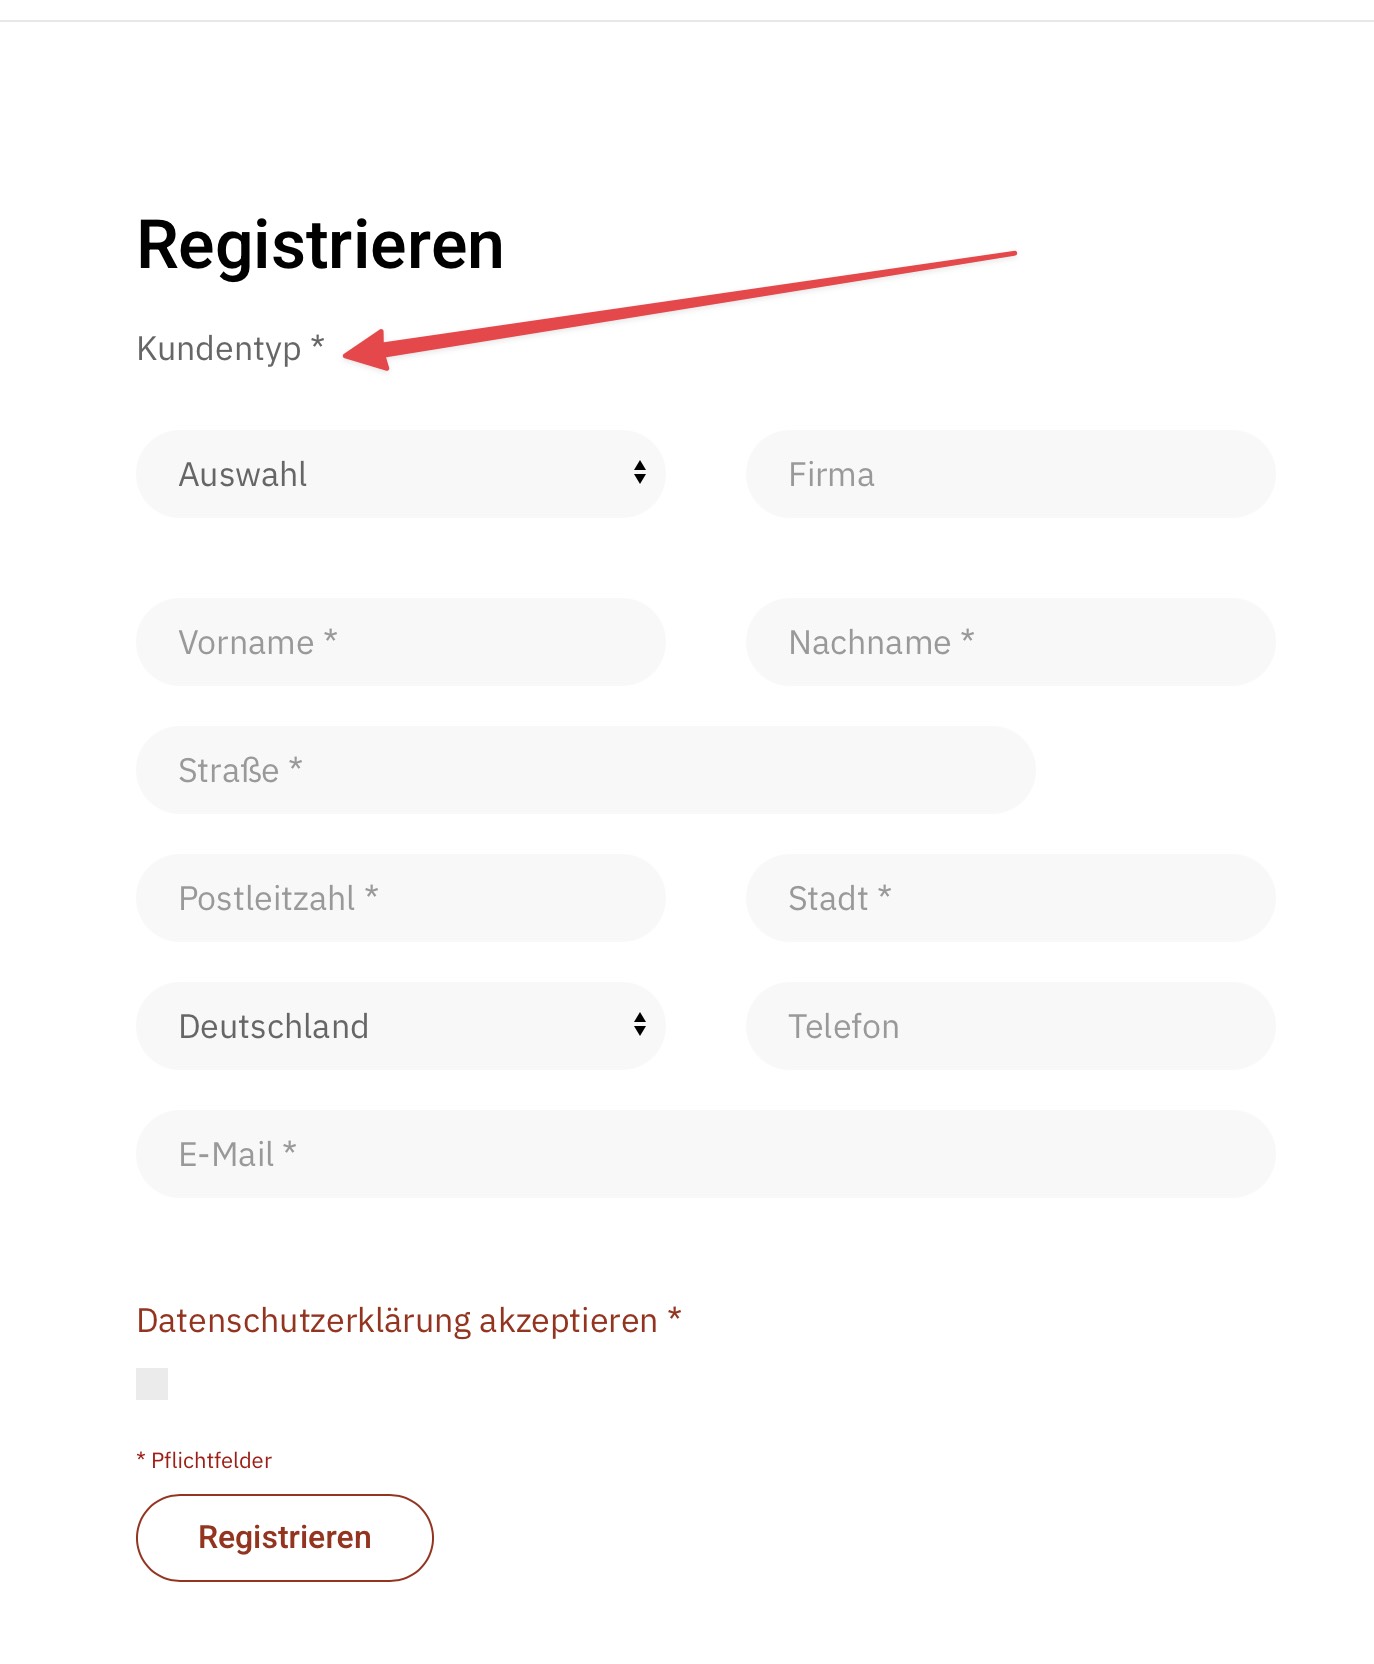 User type doesn't  show field in registration